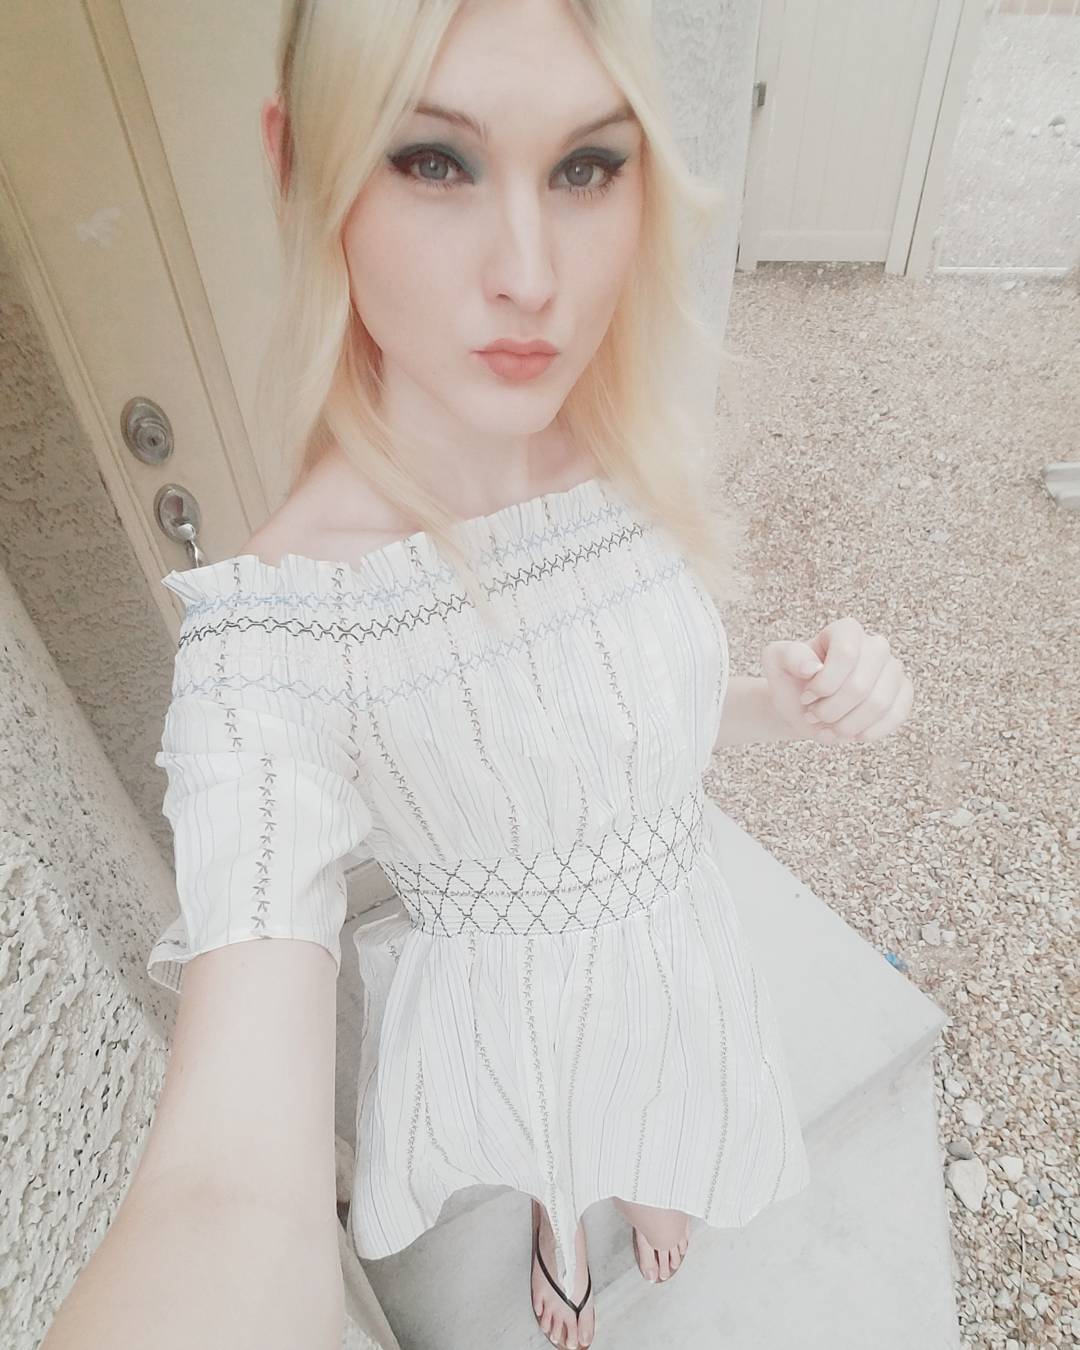 Blonde Trap Jenny Flowers dress selfie